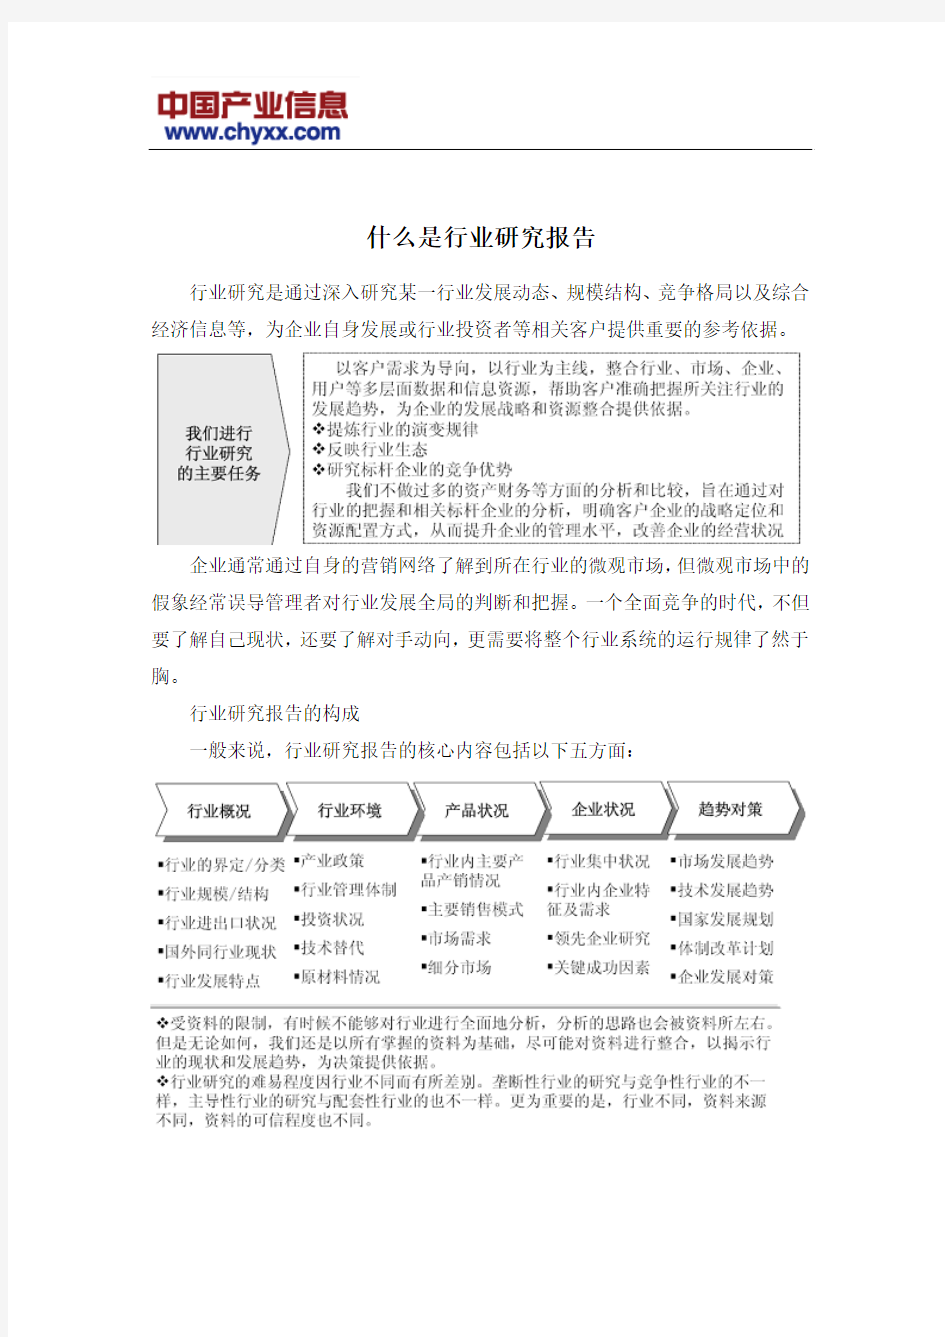 2016-2022年中国聚乳酸纤维行业运营态势报告